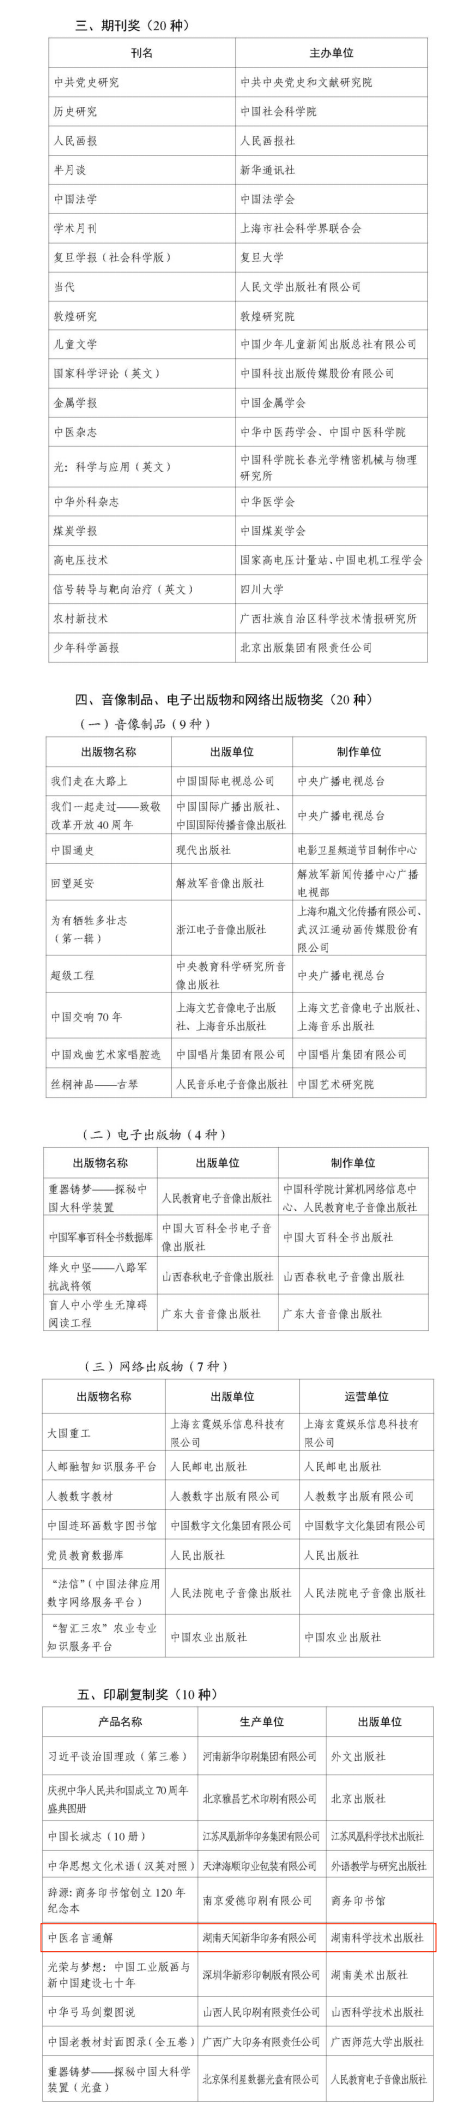 祝贺!湖南省这些单位和人物获第五届出版政府奖(图2)